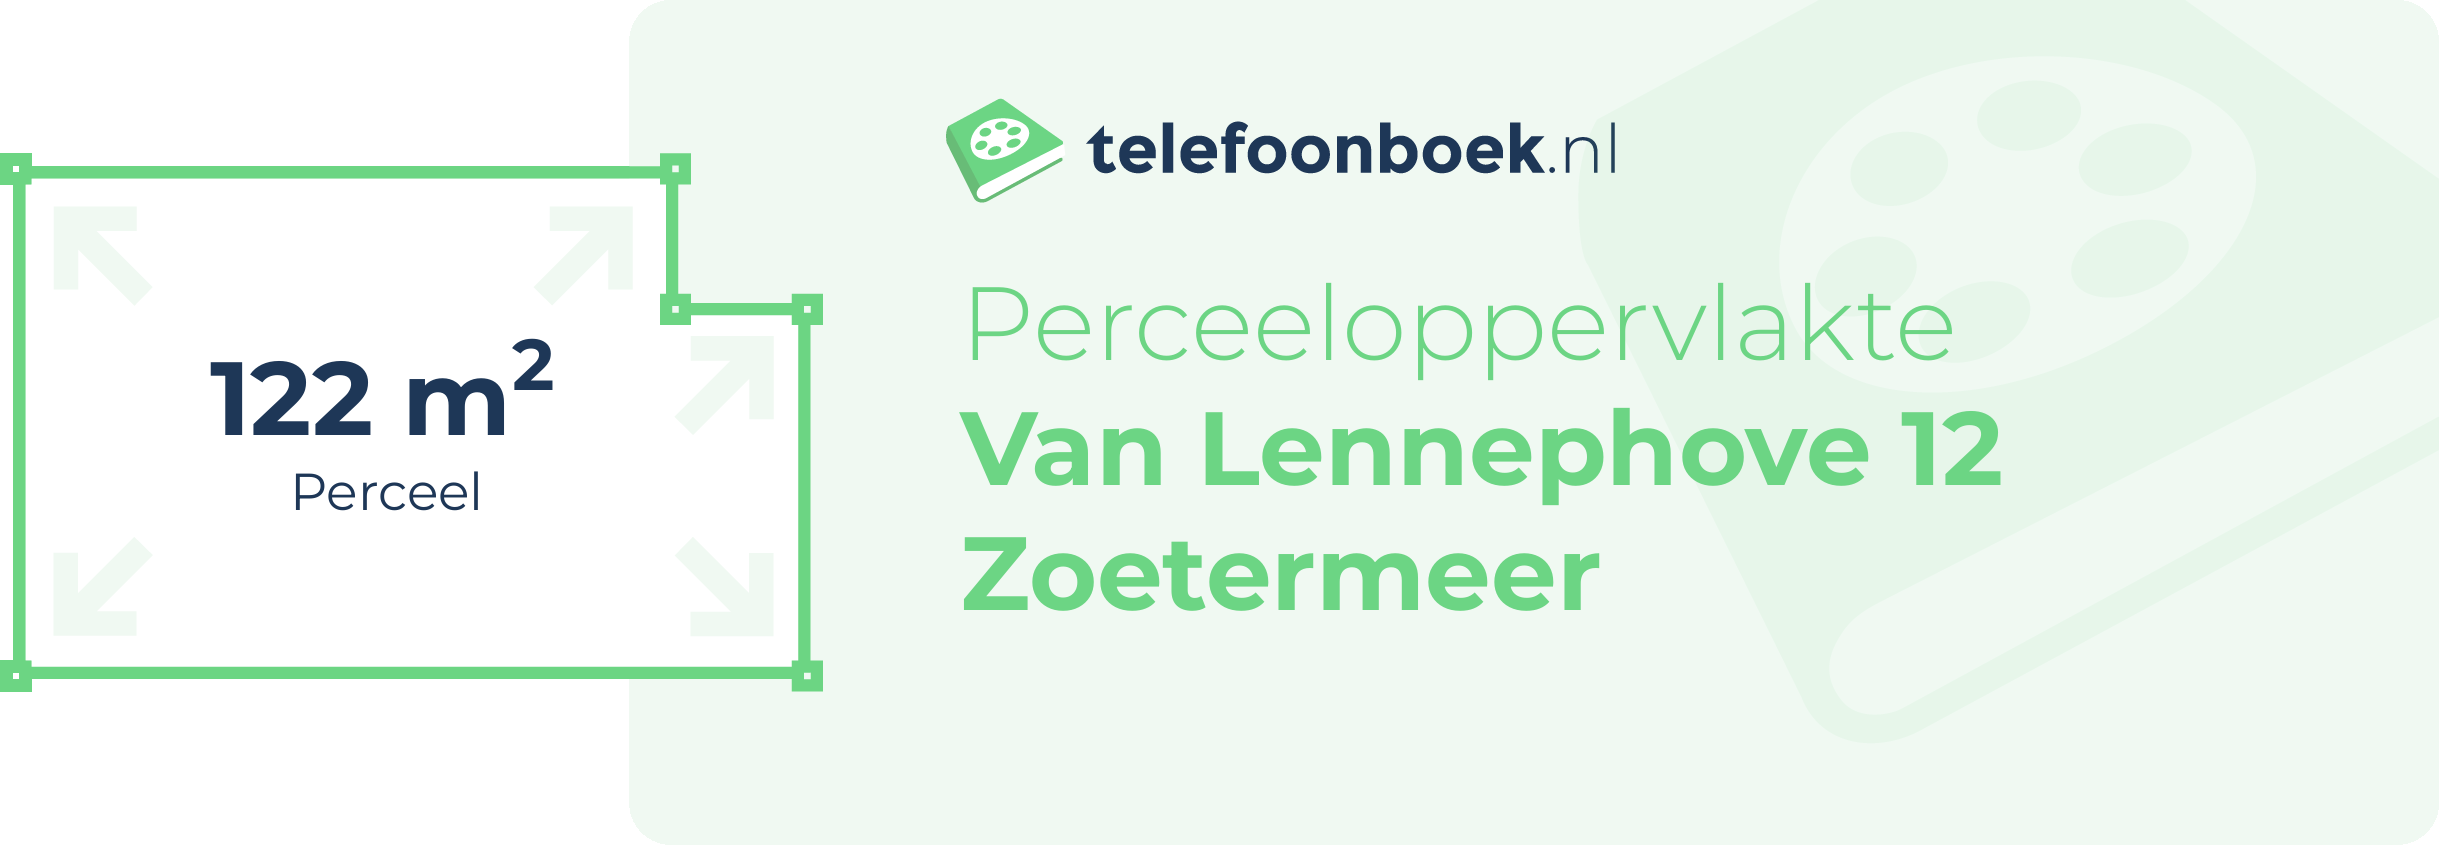 Perceeloppervlakte Van Lennephove 12 Zoetermeer